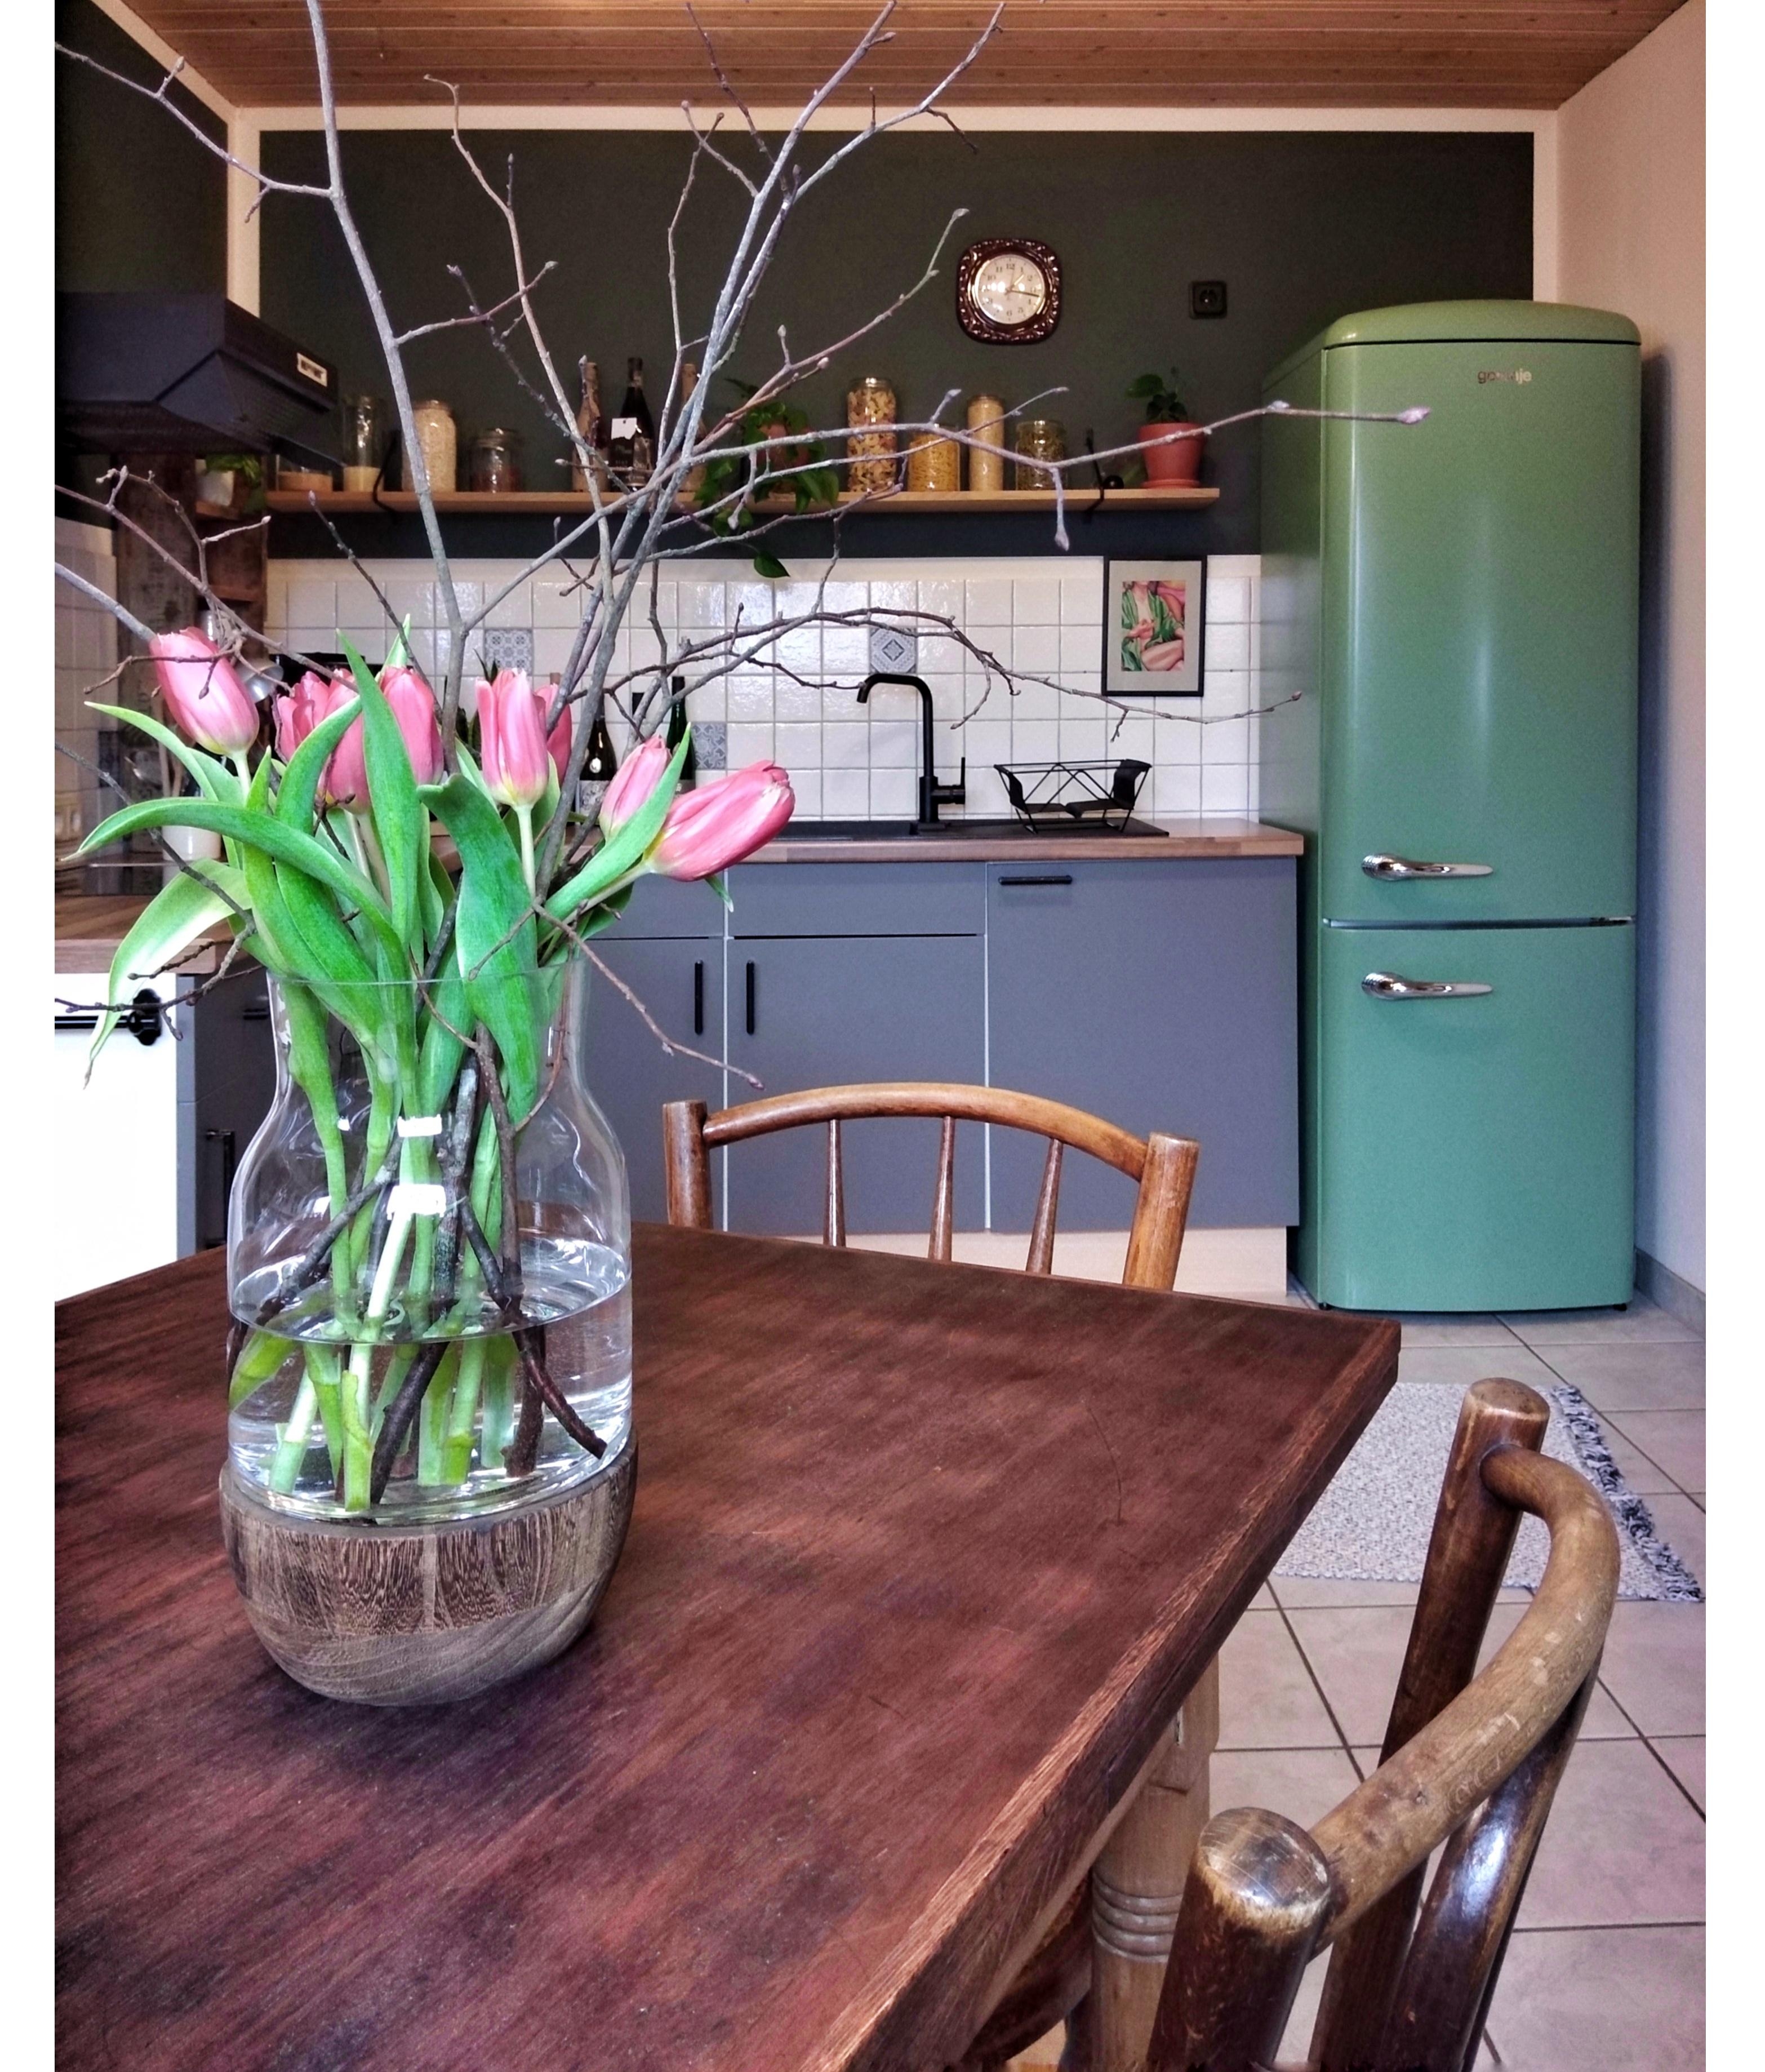 Frühlingsgefühle in der Küche. 🌷💕 #freshflowers #frühling #küche #küchenliebe 